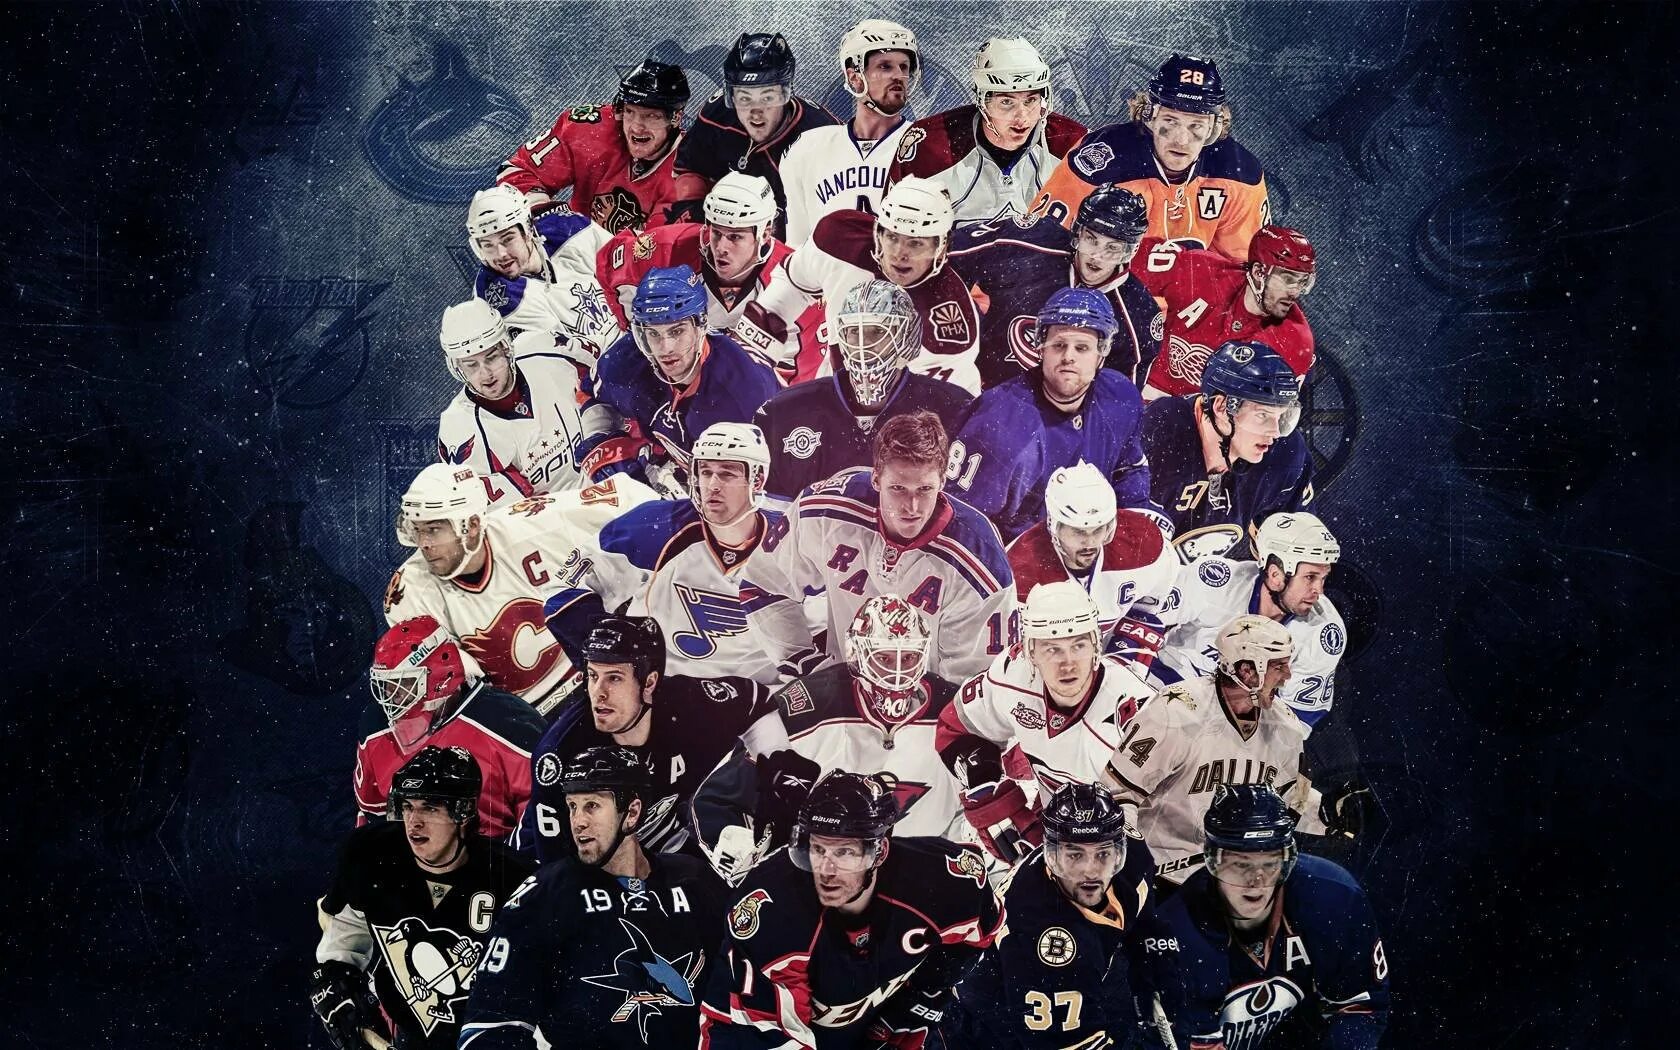 Картинки хоккейных команд